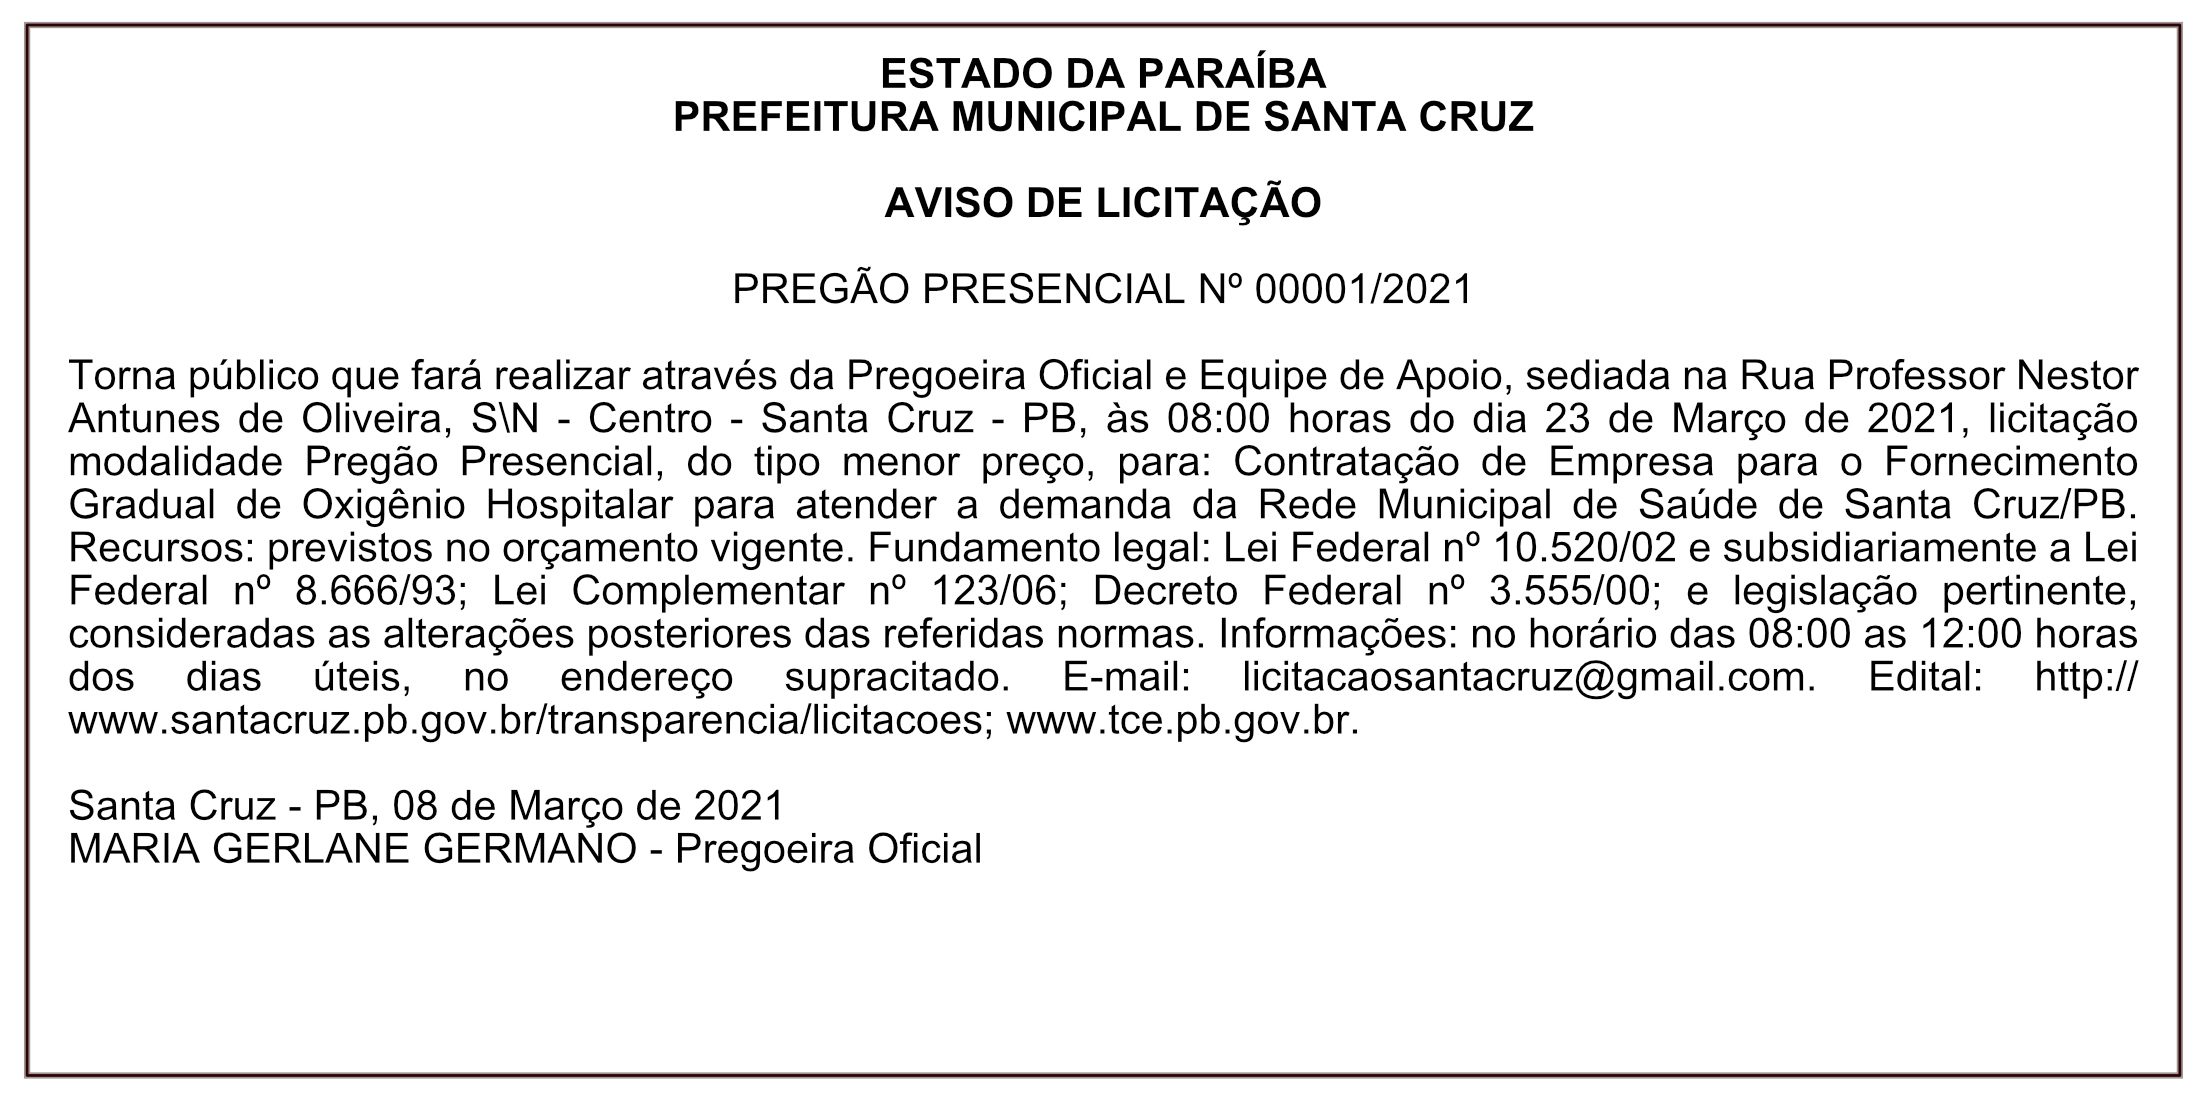 PREFEITURA MUNICIPAL DE SANTA CRUZ – AVISO DE LICITAÇÃO – PREGÃO PRESENCIAL Nº 00001/2021